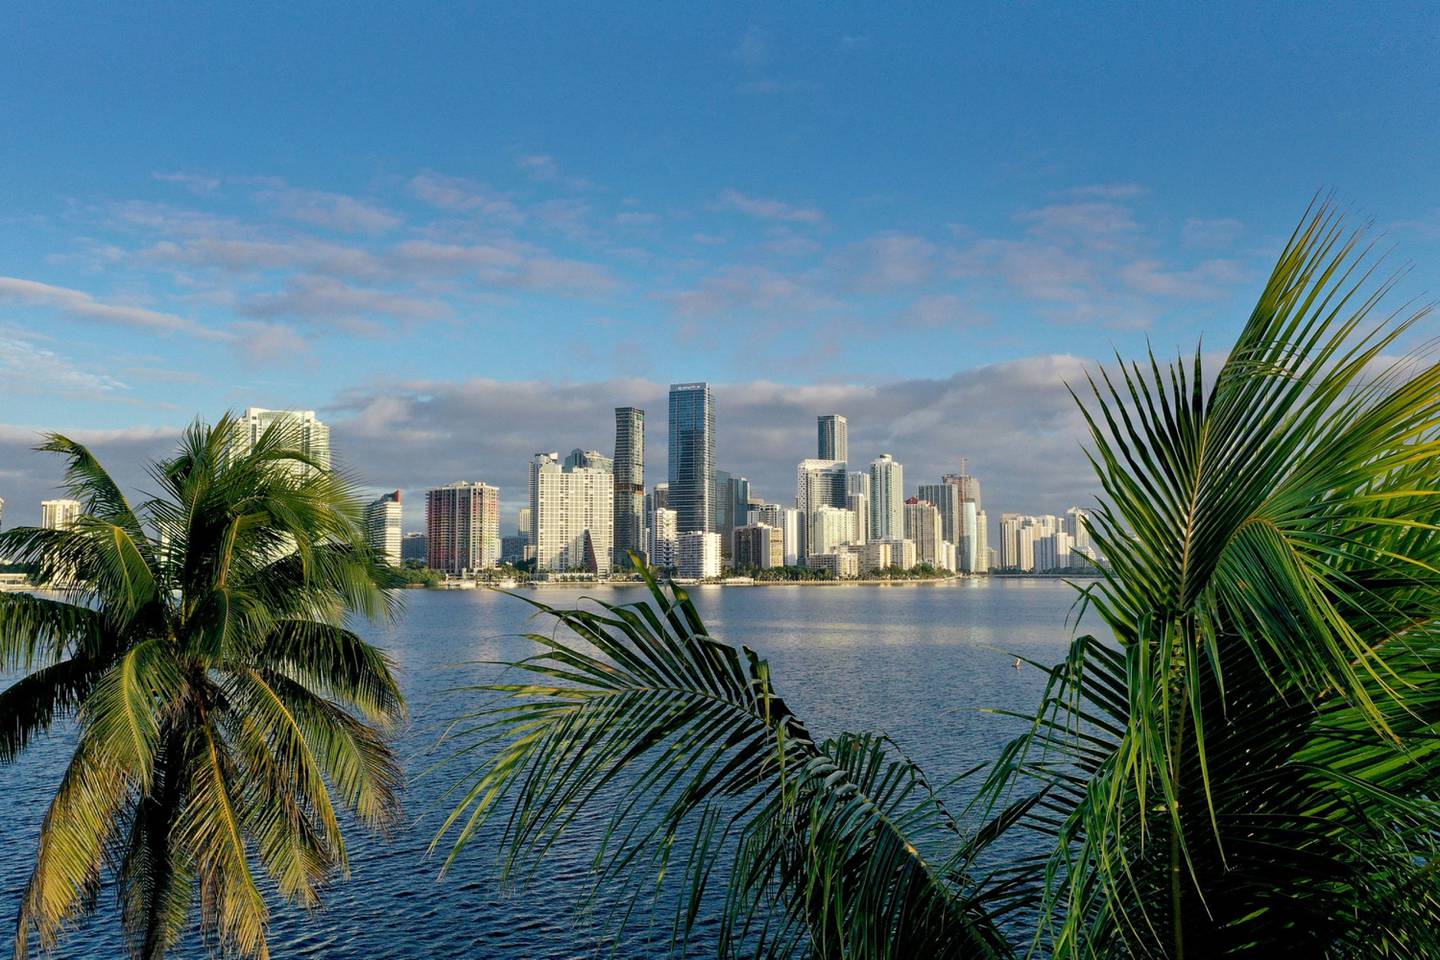 Vista aérea de palmeras enmarcando el perfil de la ciudad el 27 de octubre de 2021 en Miami, Florida. Foto de Joe Raedle/Getty Images